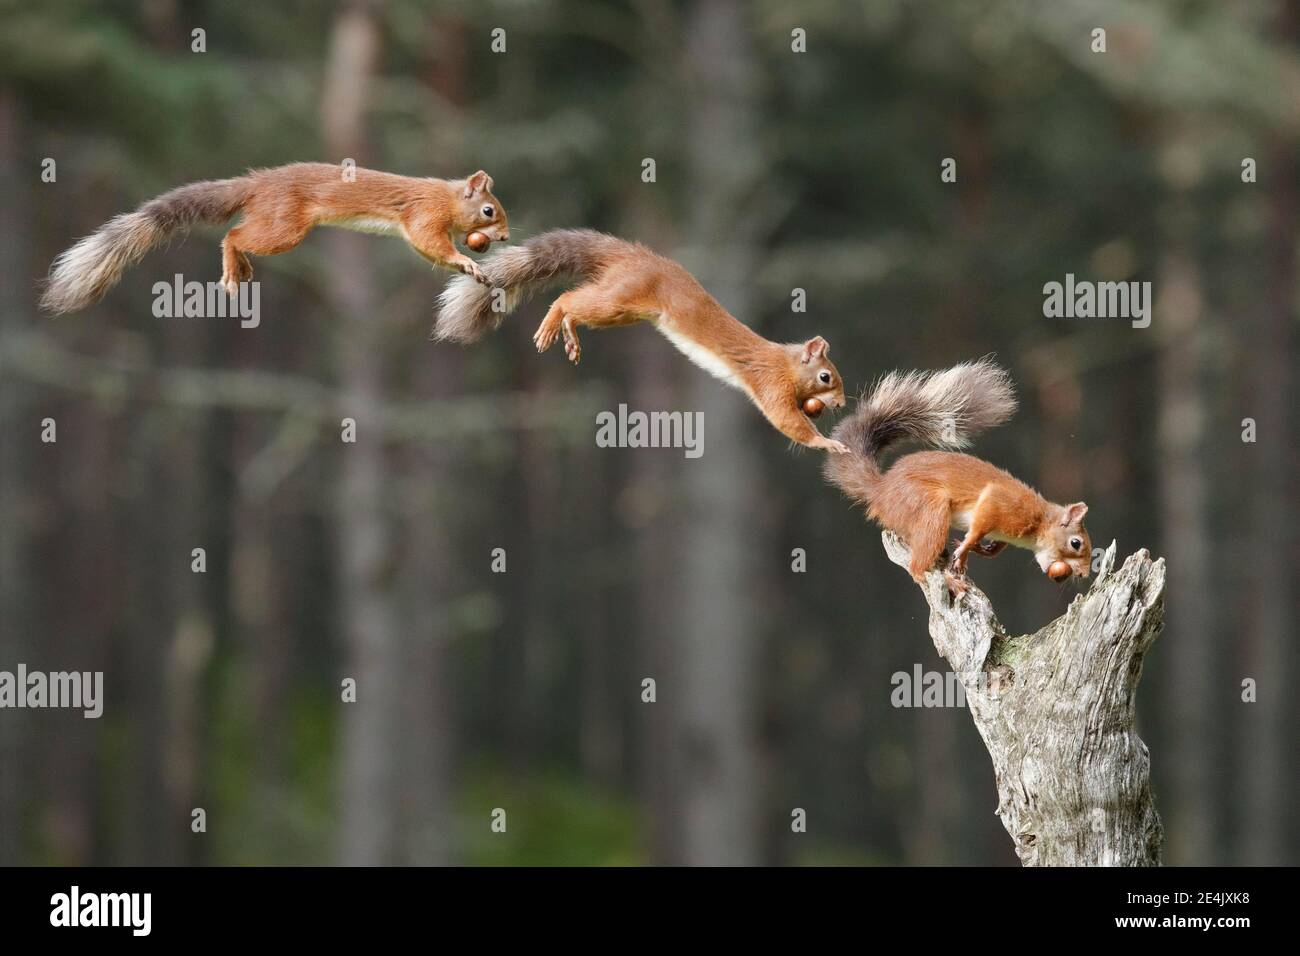 Photomontage, Red Squirrel (Sciurus vulgaris) Stock Photo